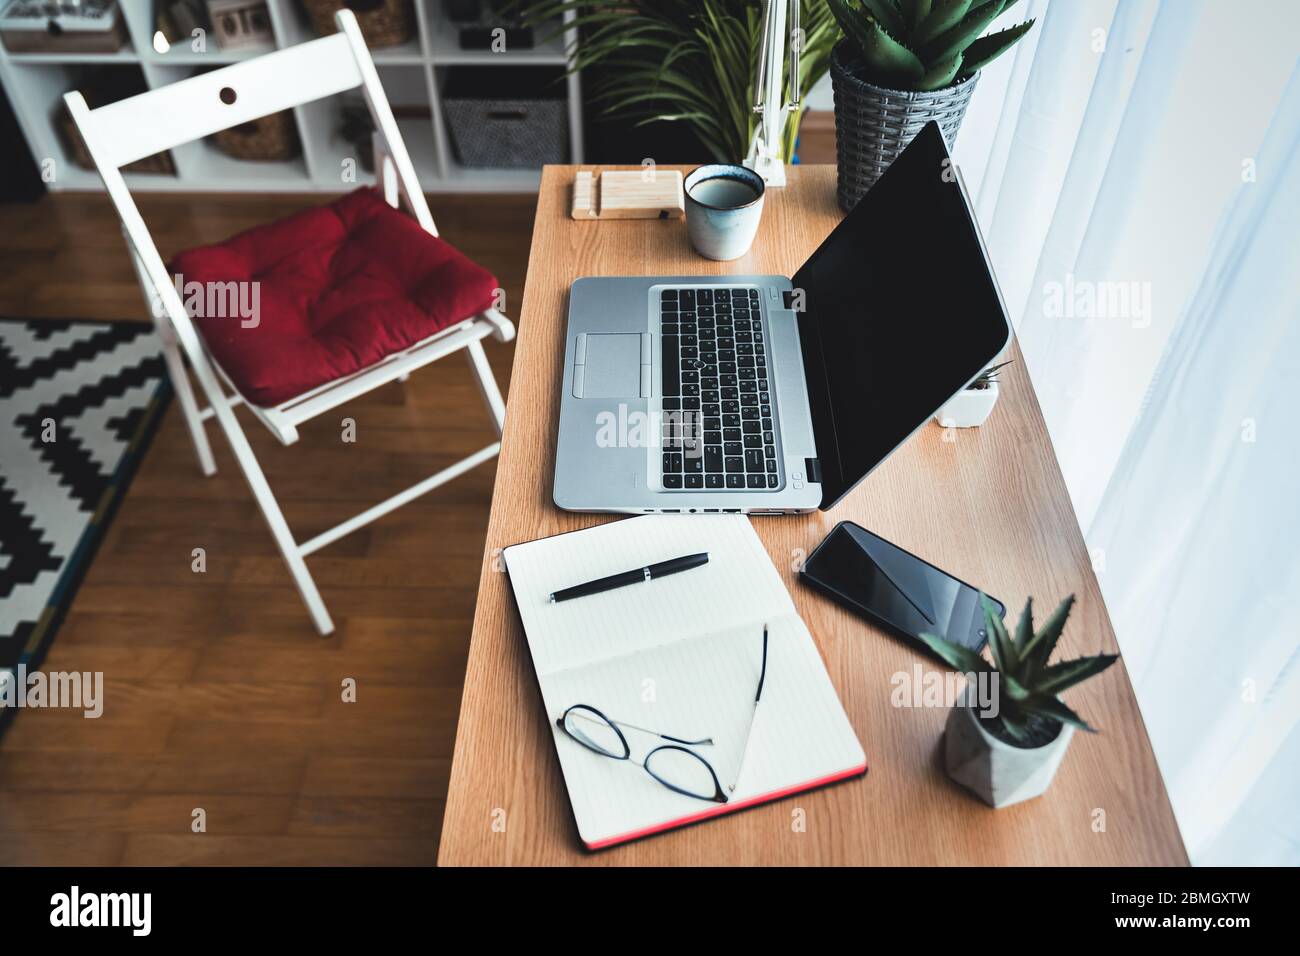 Vista dall'alto di una scrivania con un computer portatile in un ufficio creativo. Sdraiato sul tavolo: Smartphone, notebook, tazza di caffè, penna, occhiali, piante verdi. Foto Stock